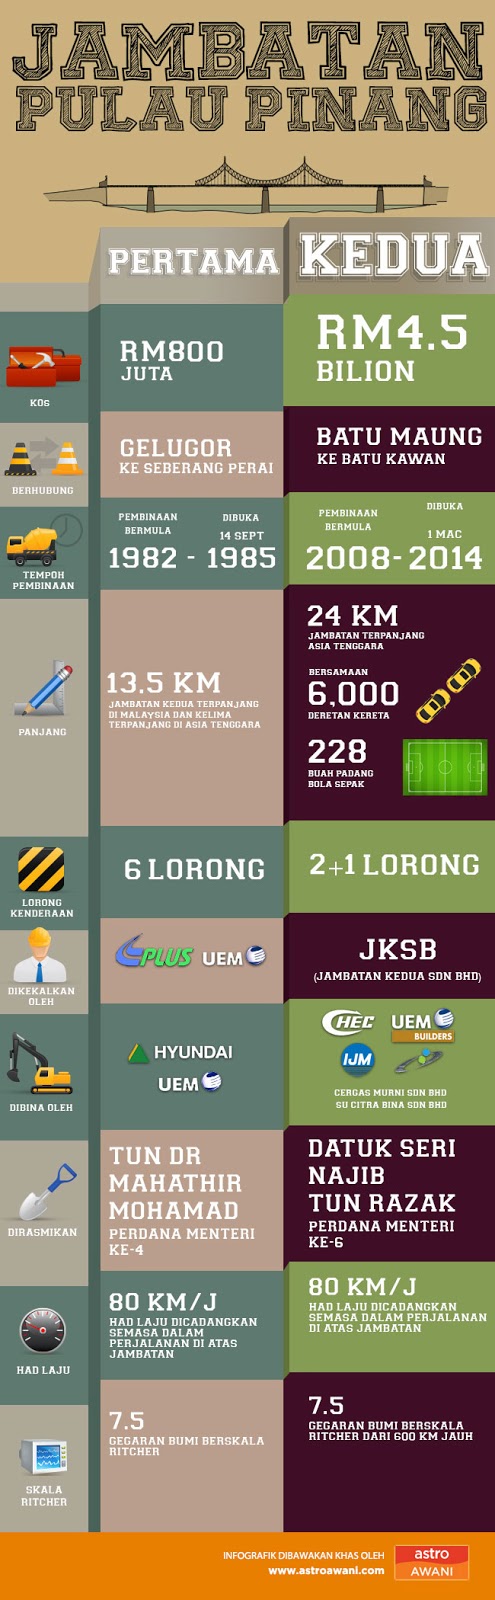 Infografik menarik tentang Jambatan Ke-2 Pulau Pinang